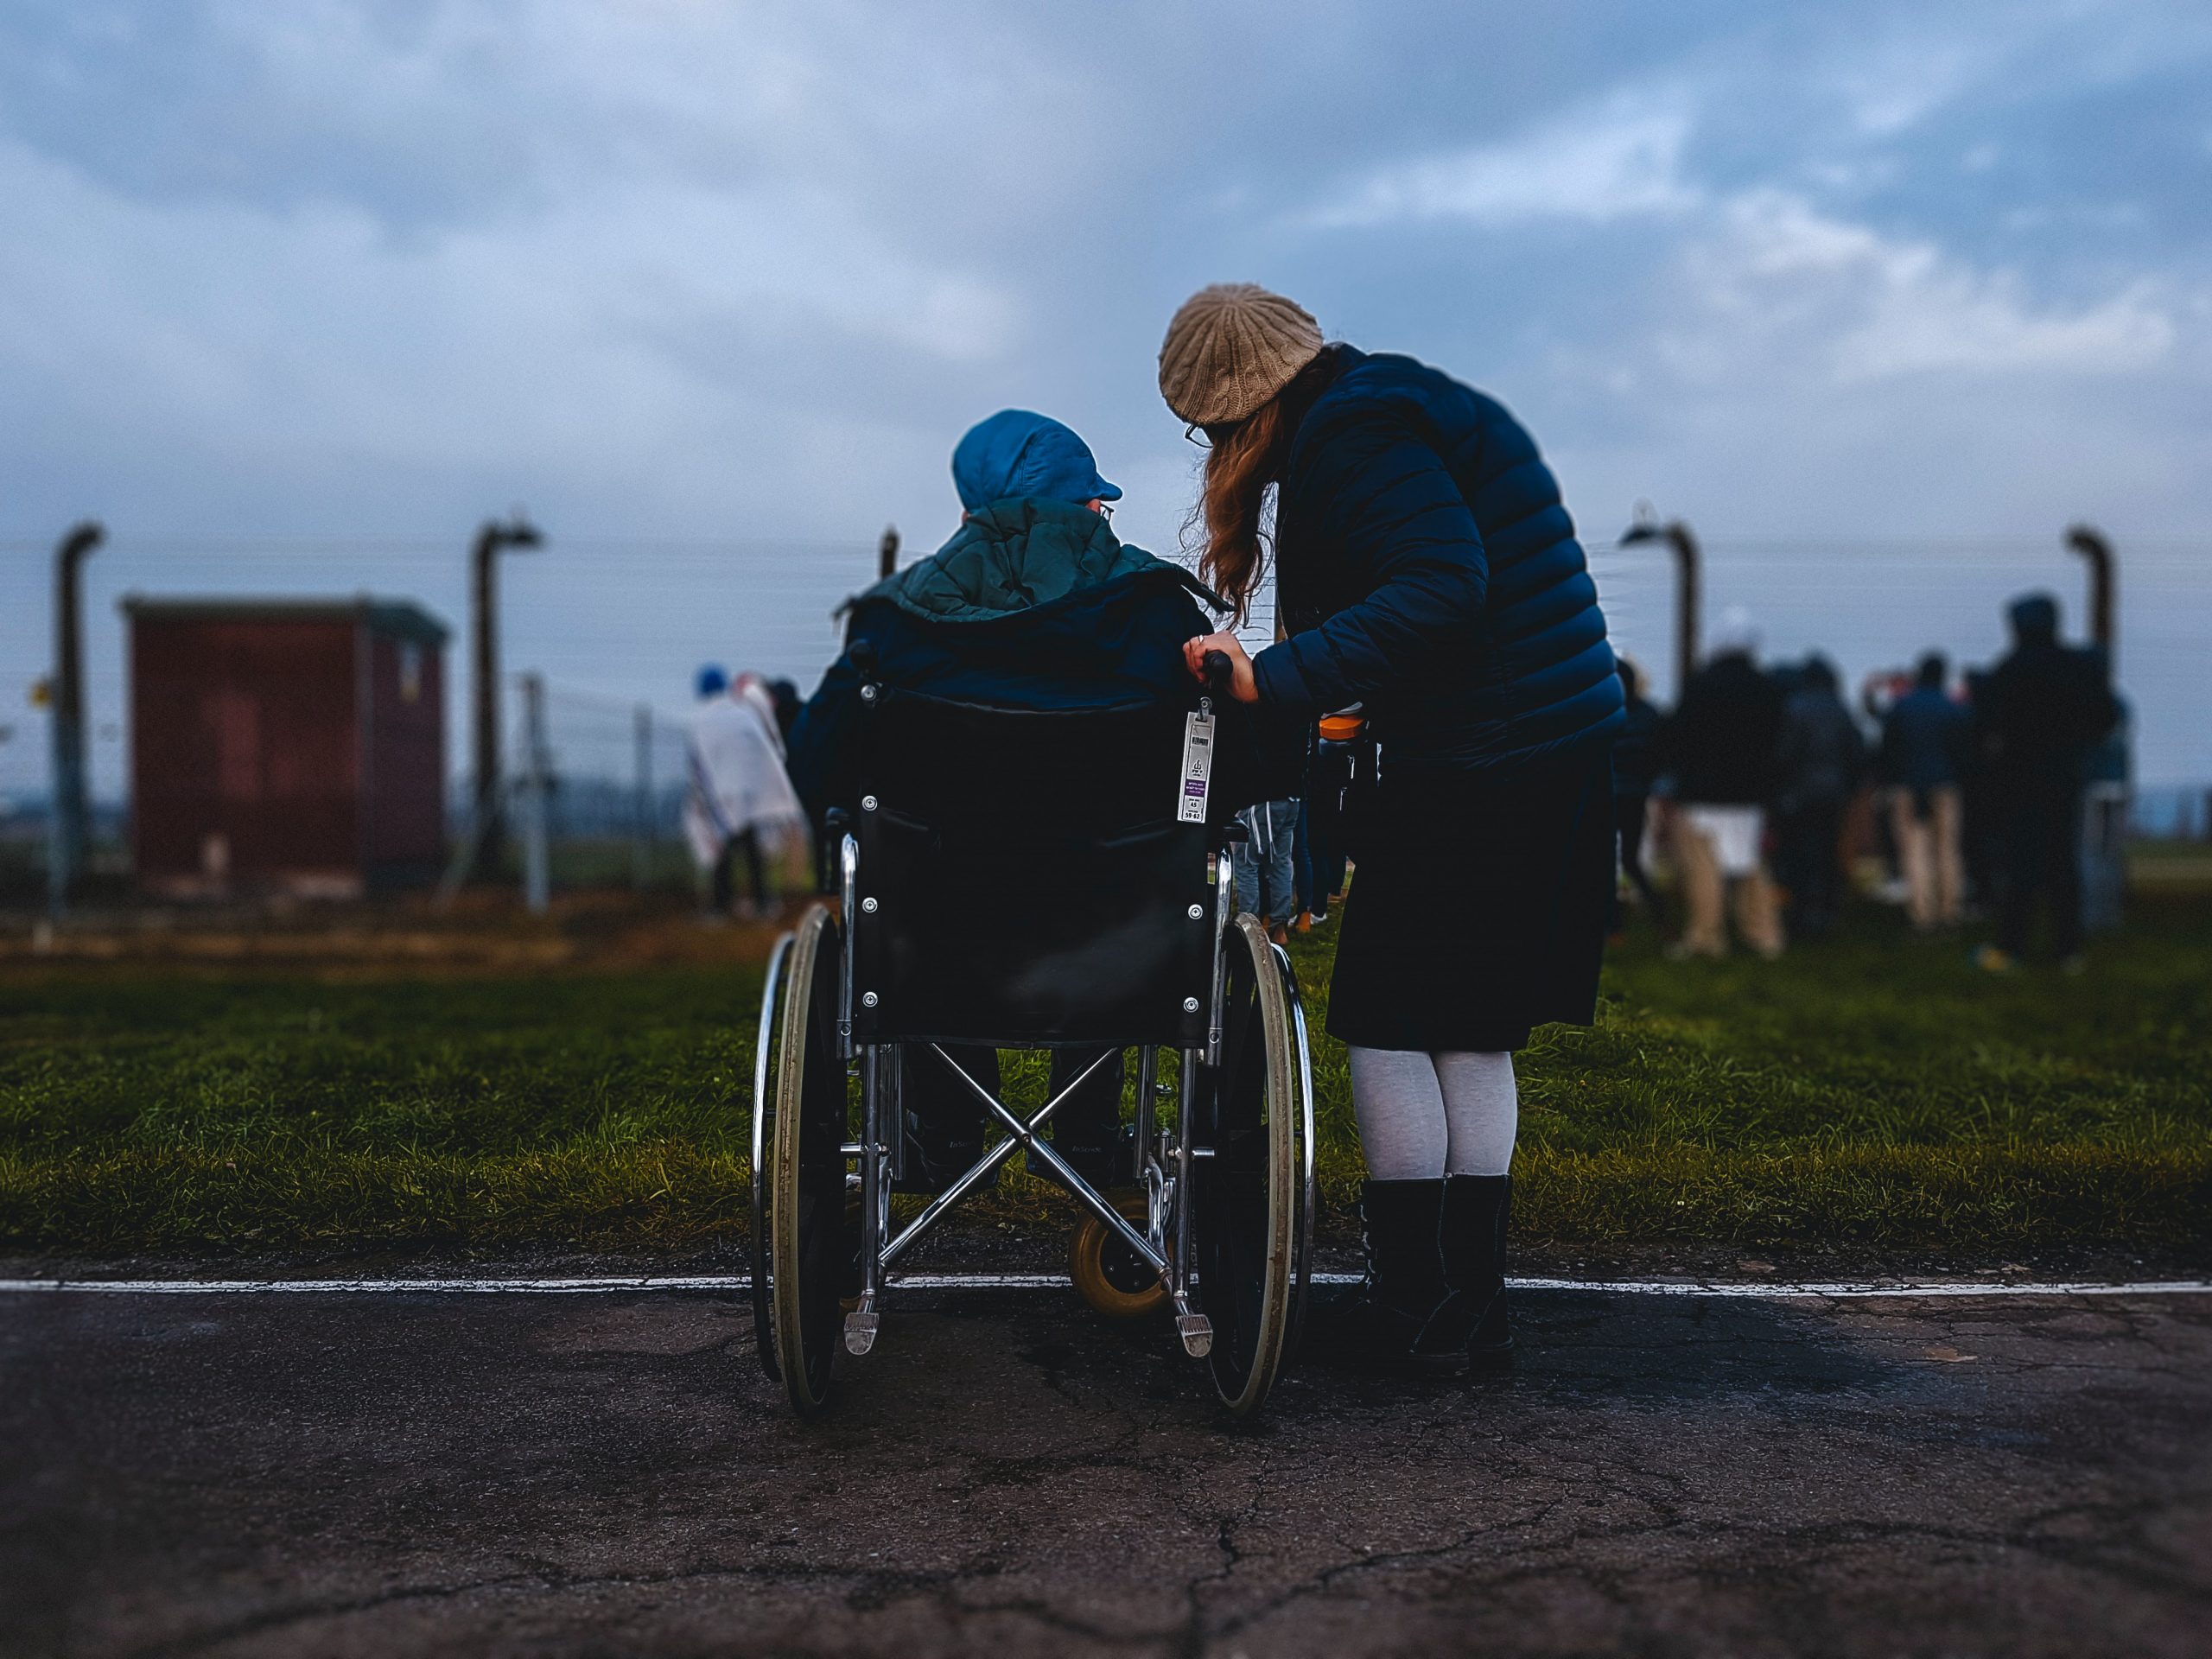 Fotografia de duas pessoas de costas. Uma é uma pessoa com deficiência, em uma cadeira de rodas, e outra é uma pessoa sem deficiência, ao lado dela. Ambas olham para o horizonte.